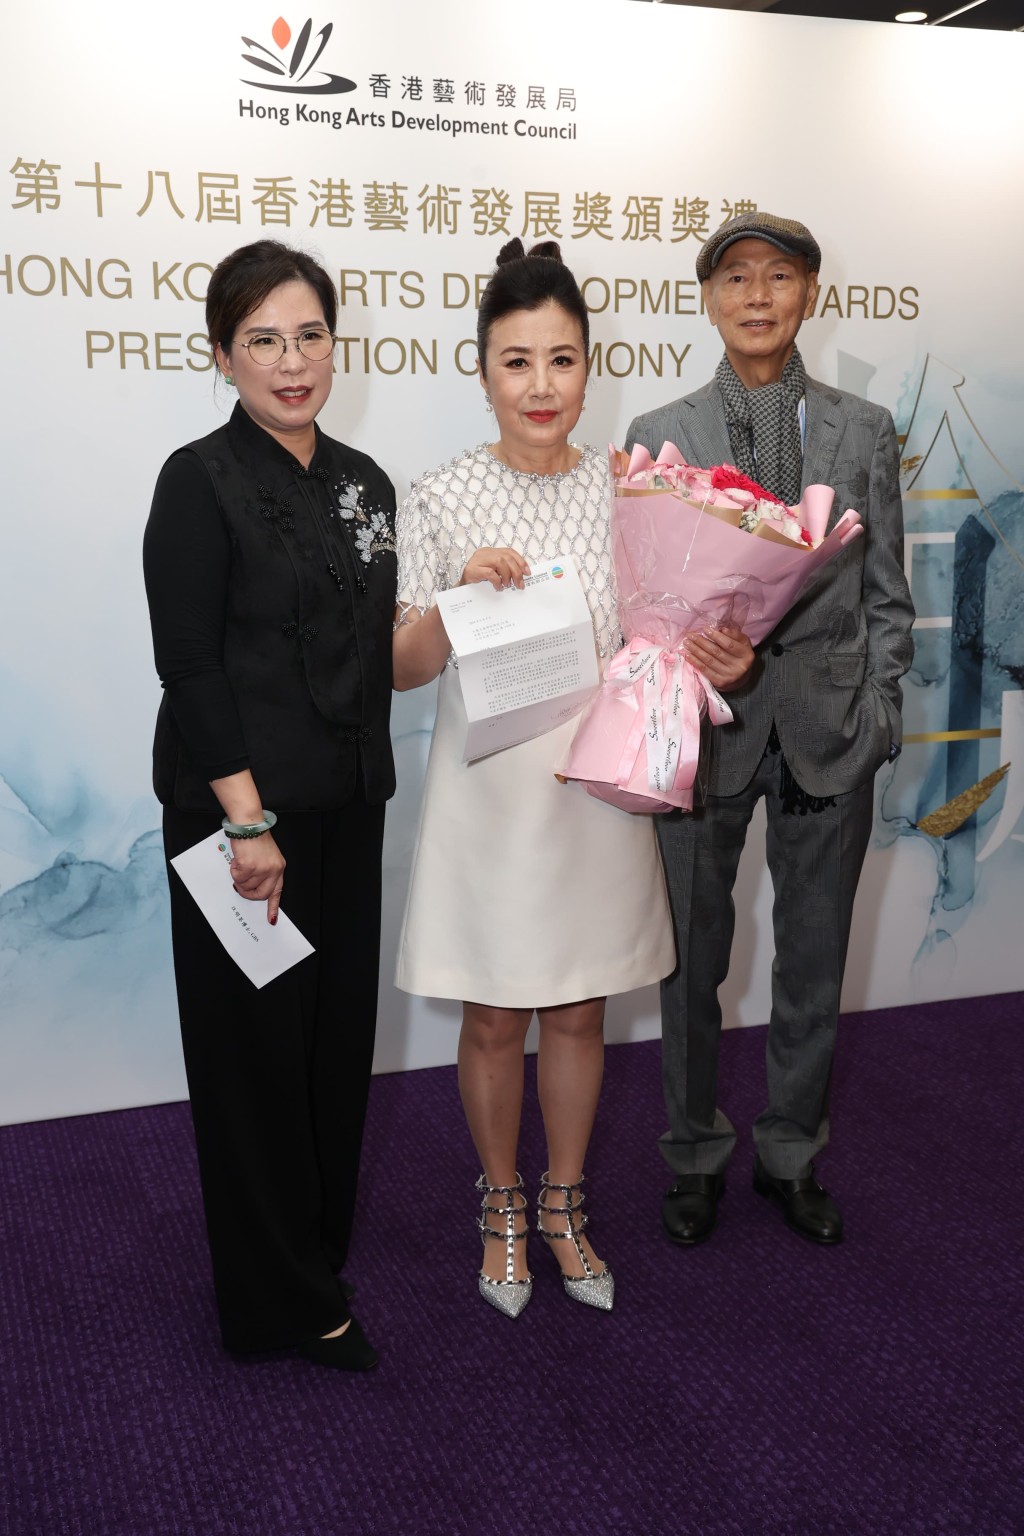 电视广播有限公司助理总经理(企业传讯）黄德慧代表TVB给祝贺函恭贺阿姐。